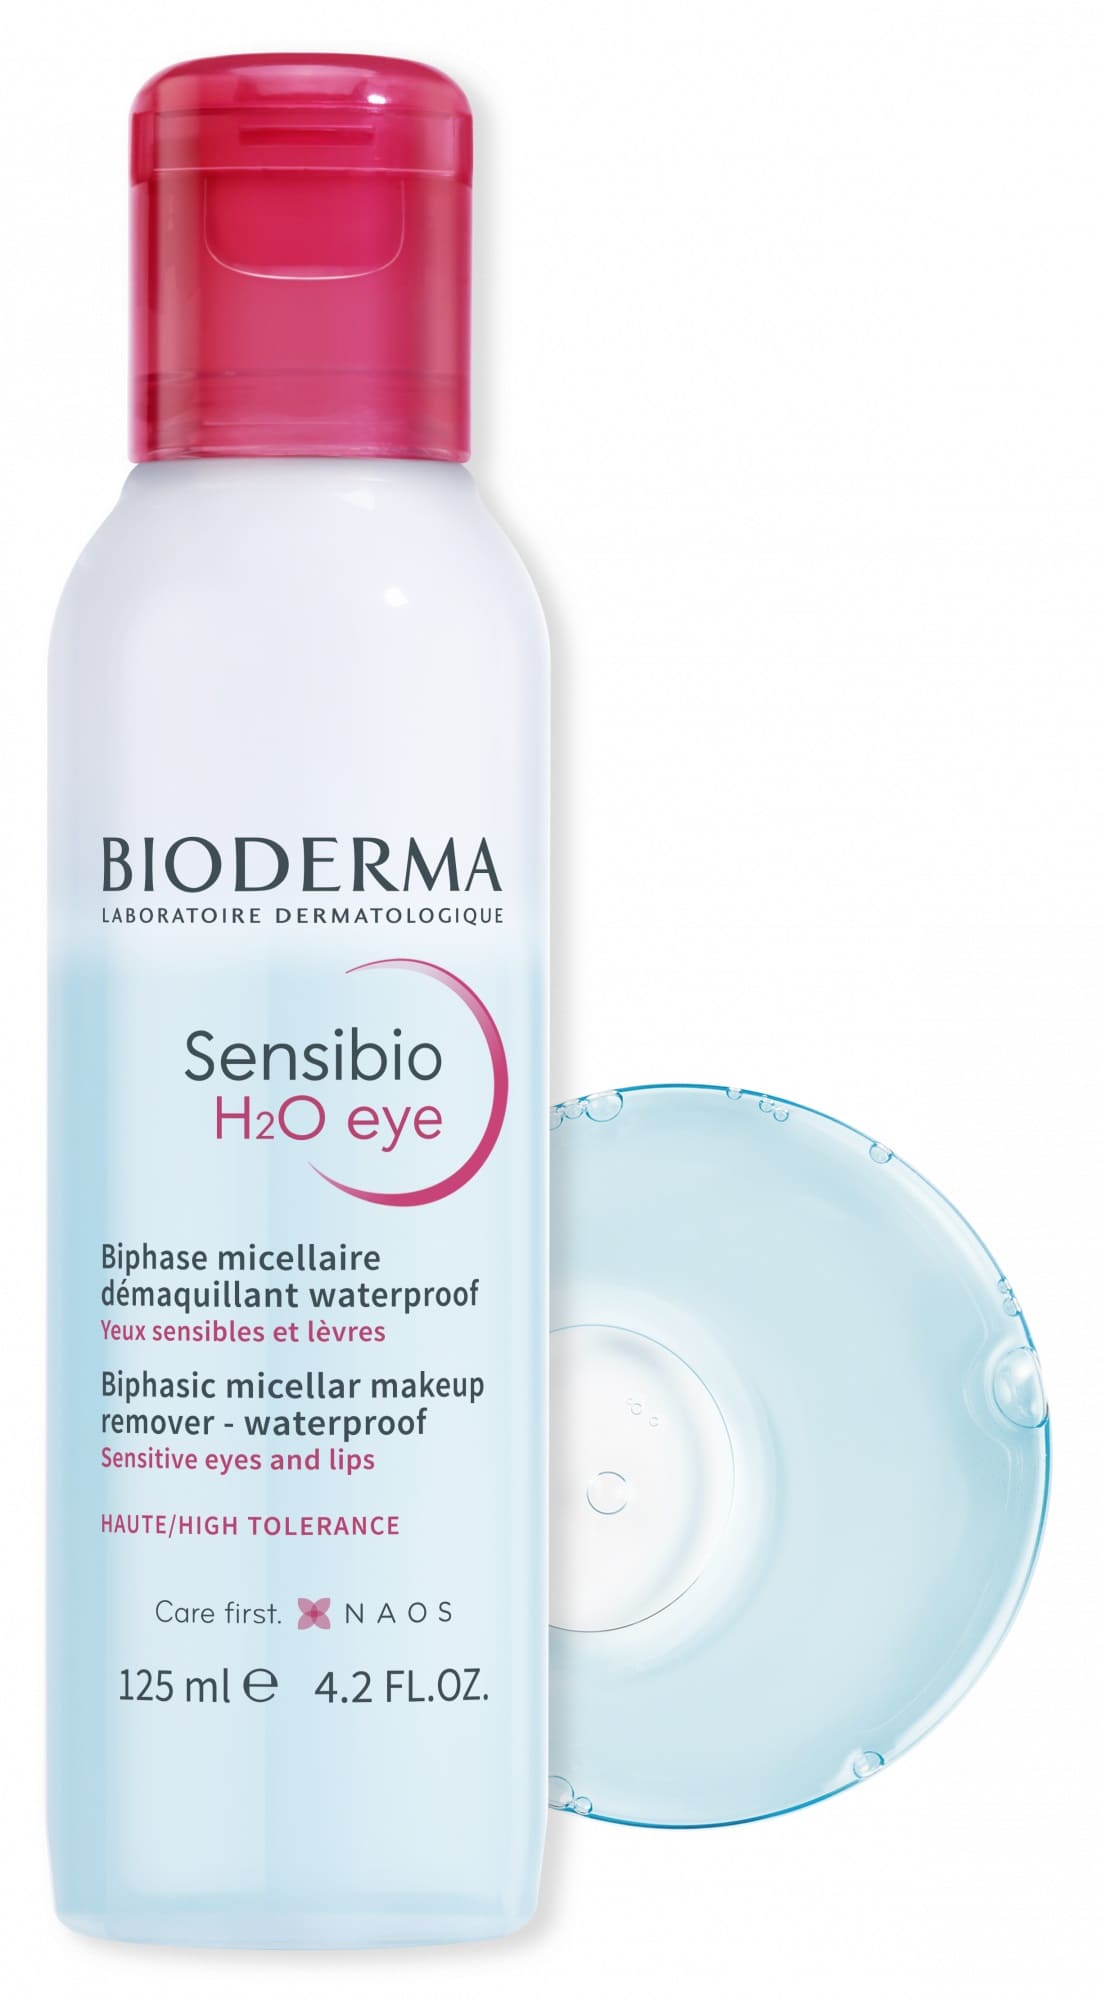 Bioderma Sensibio H2O Eye Biphasic Micellar Makeup Remover Waterproof